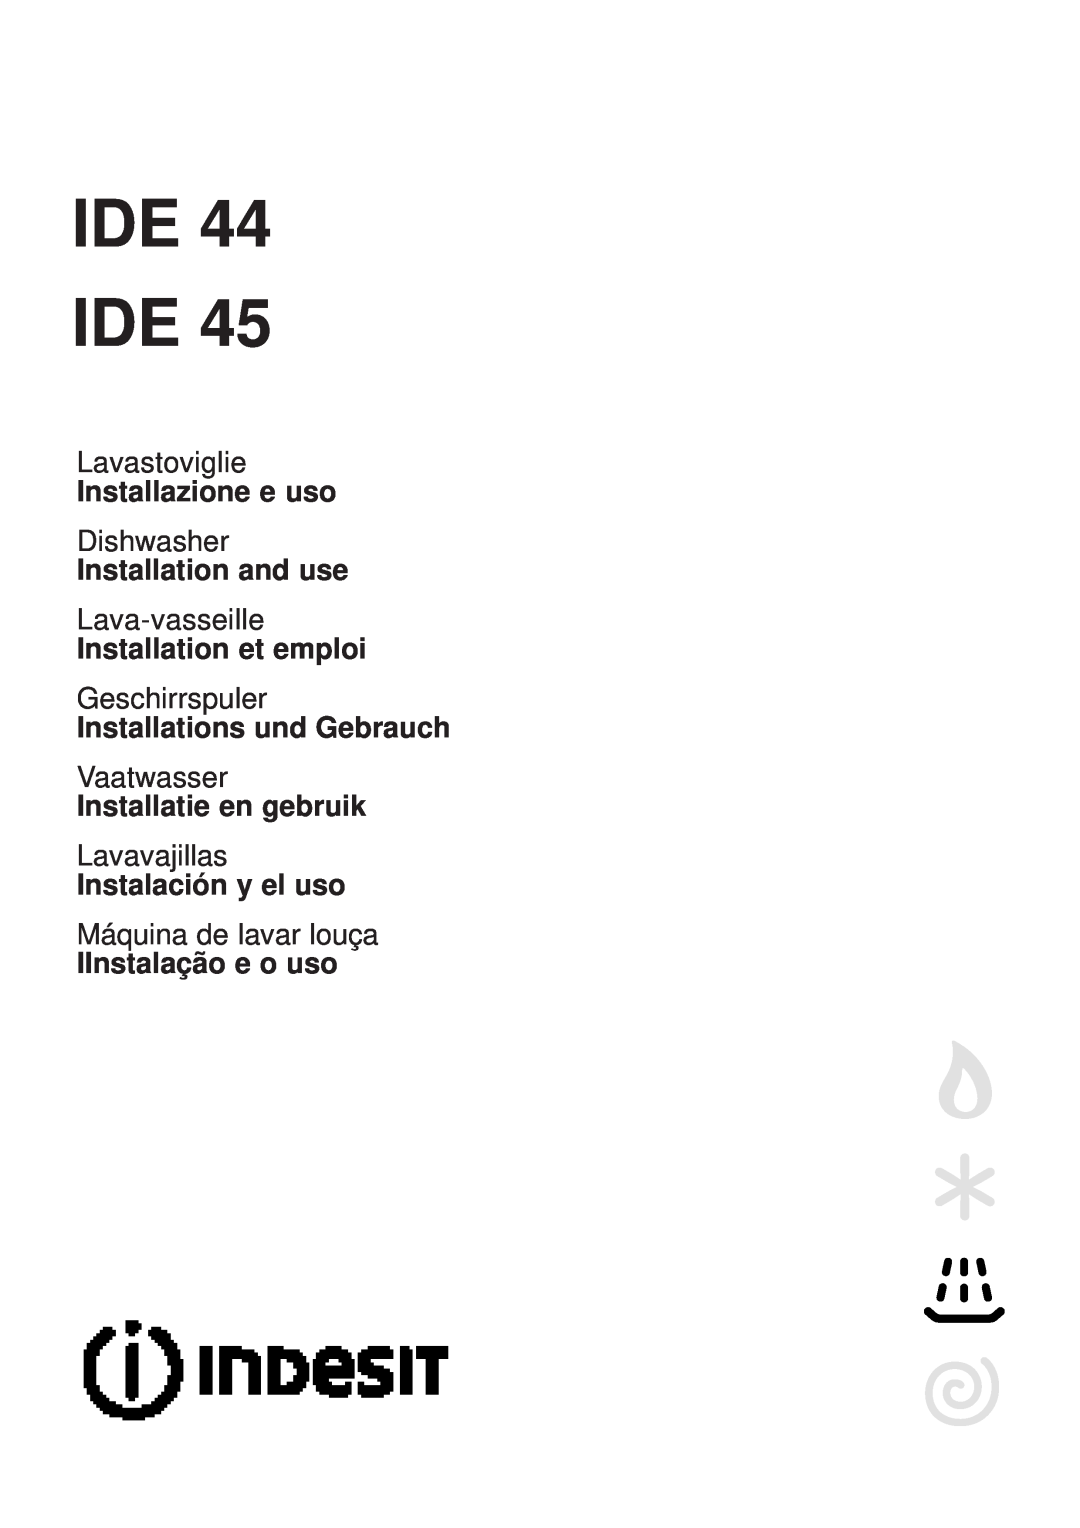 Indesit IDE 45 manual Ide Ide, Lavastoviglie, Installazione e uso, Dishwasher, Installation and use, Lava-vasseille 